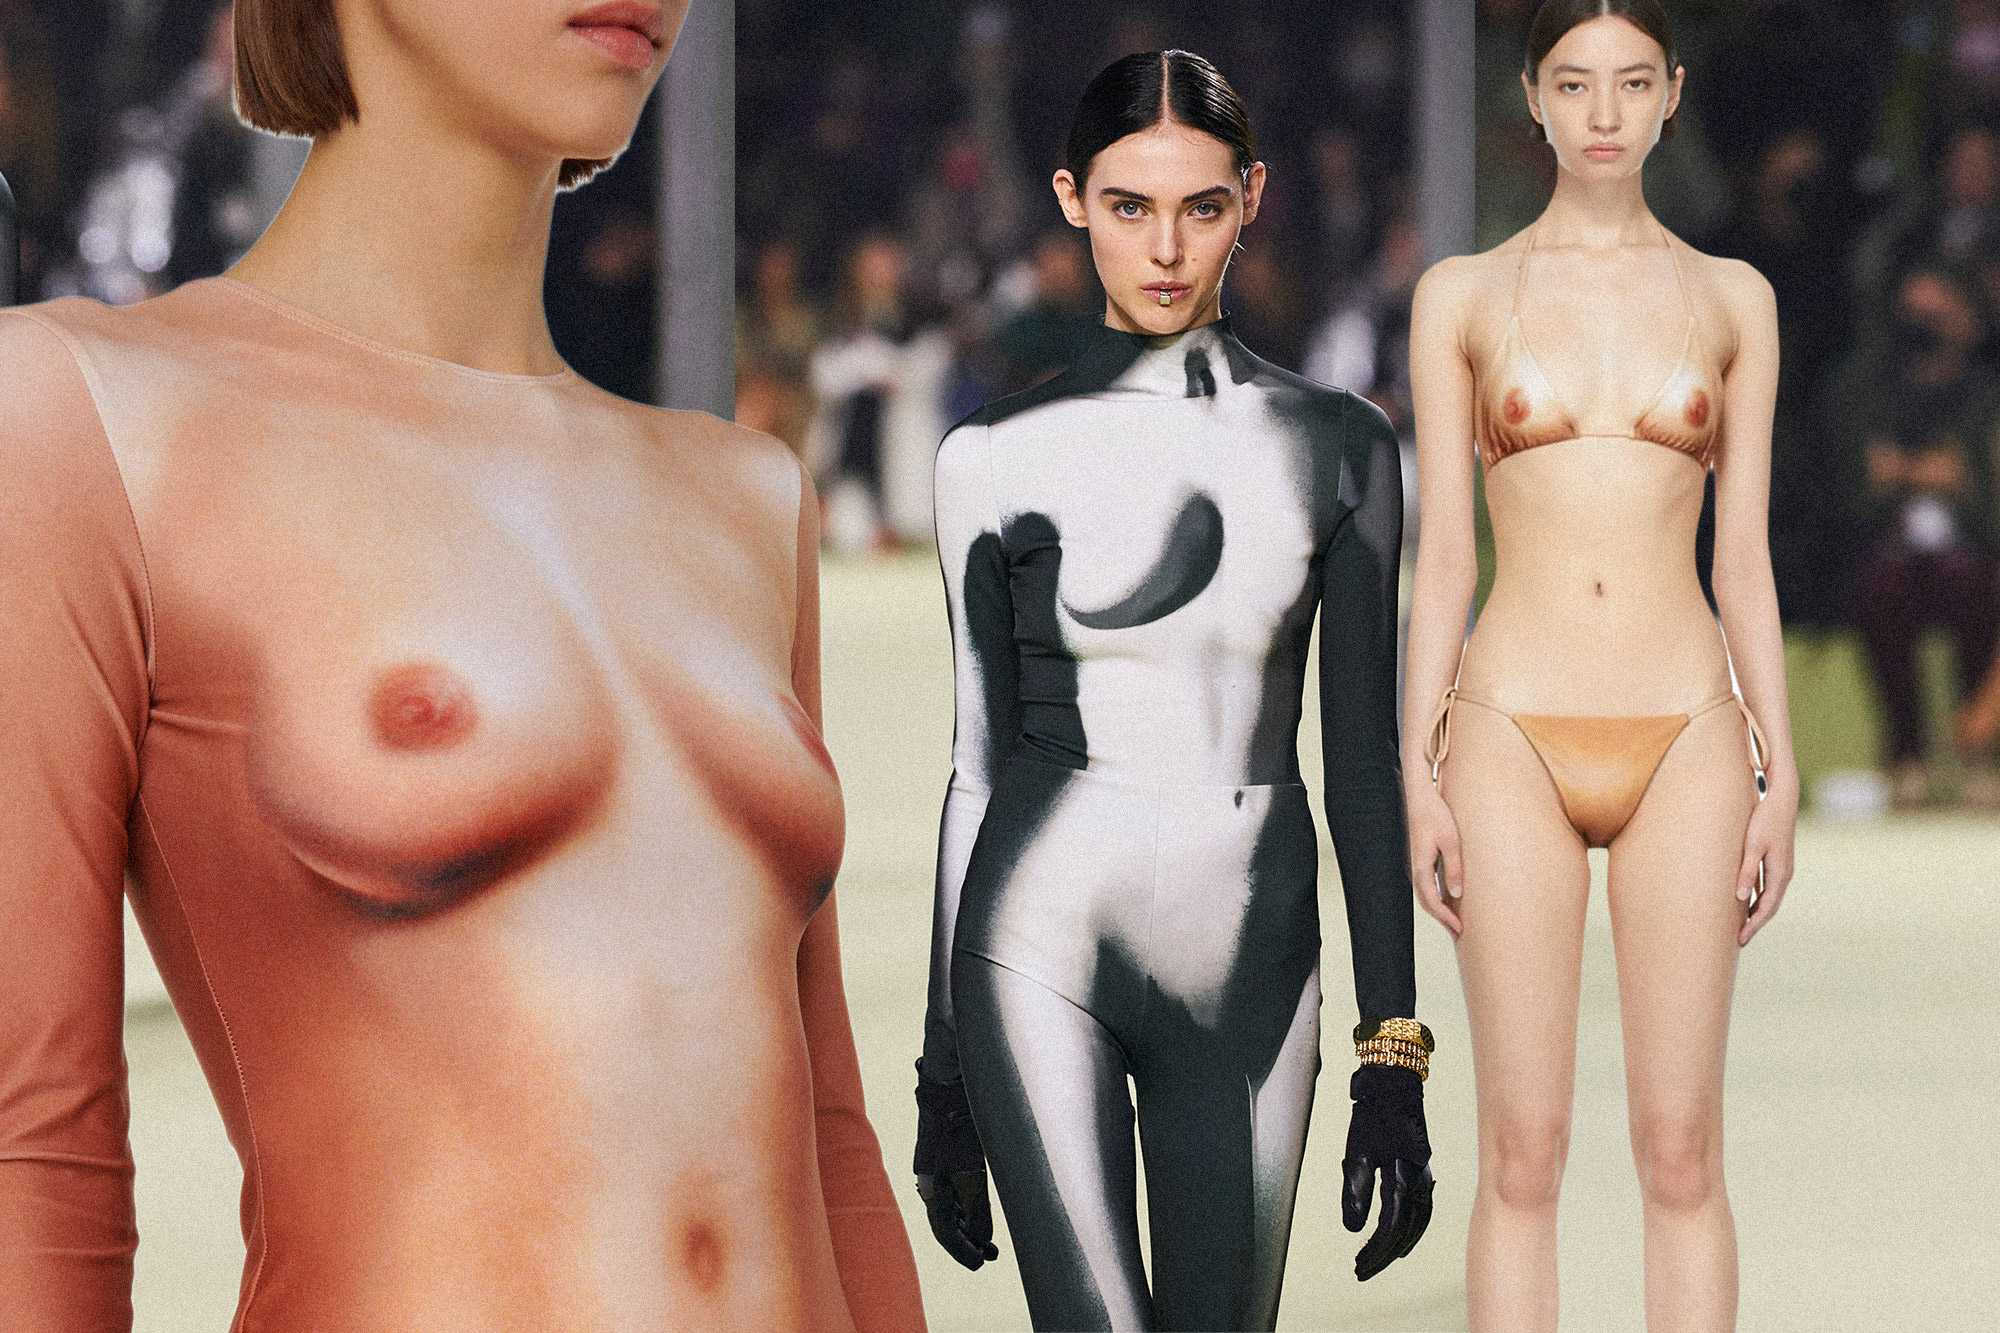 El auge del vestido-desnudo o por qué la moda se ha empeñado en estampar pezones hiperrealistas en las prendas Moda S Moda EL PAÍS imagen